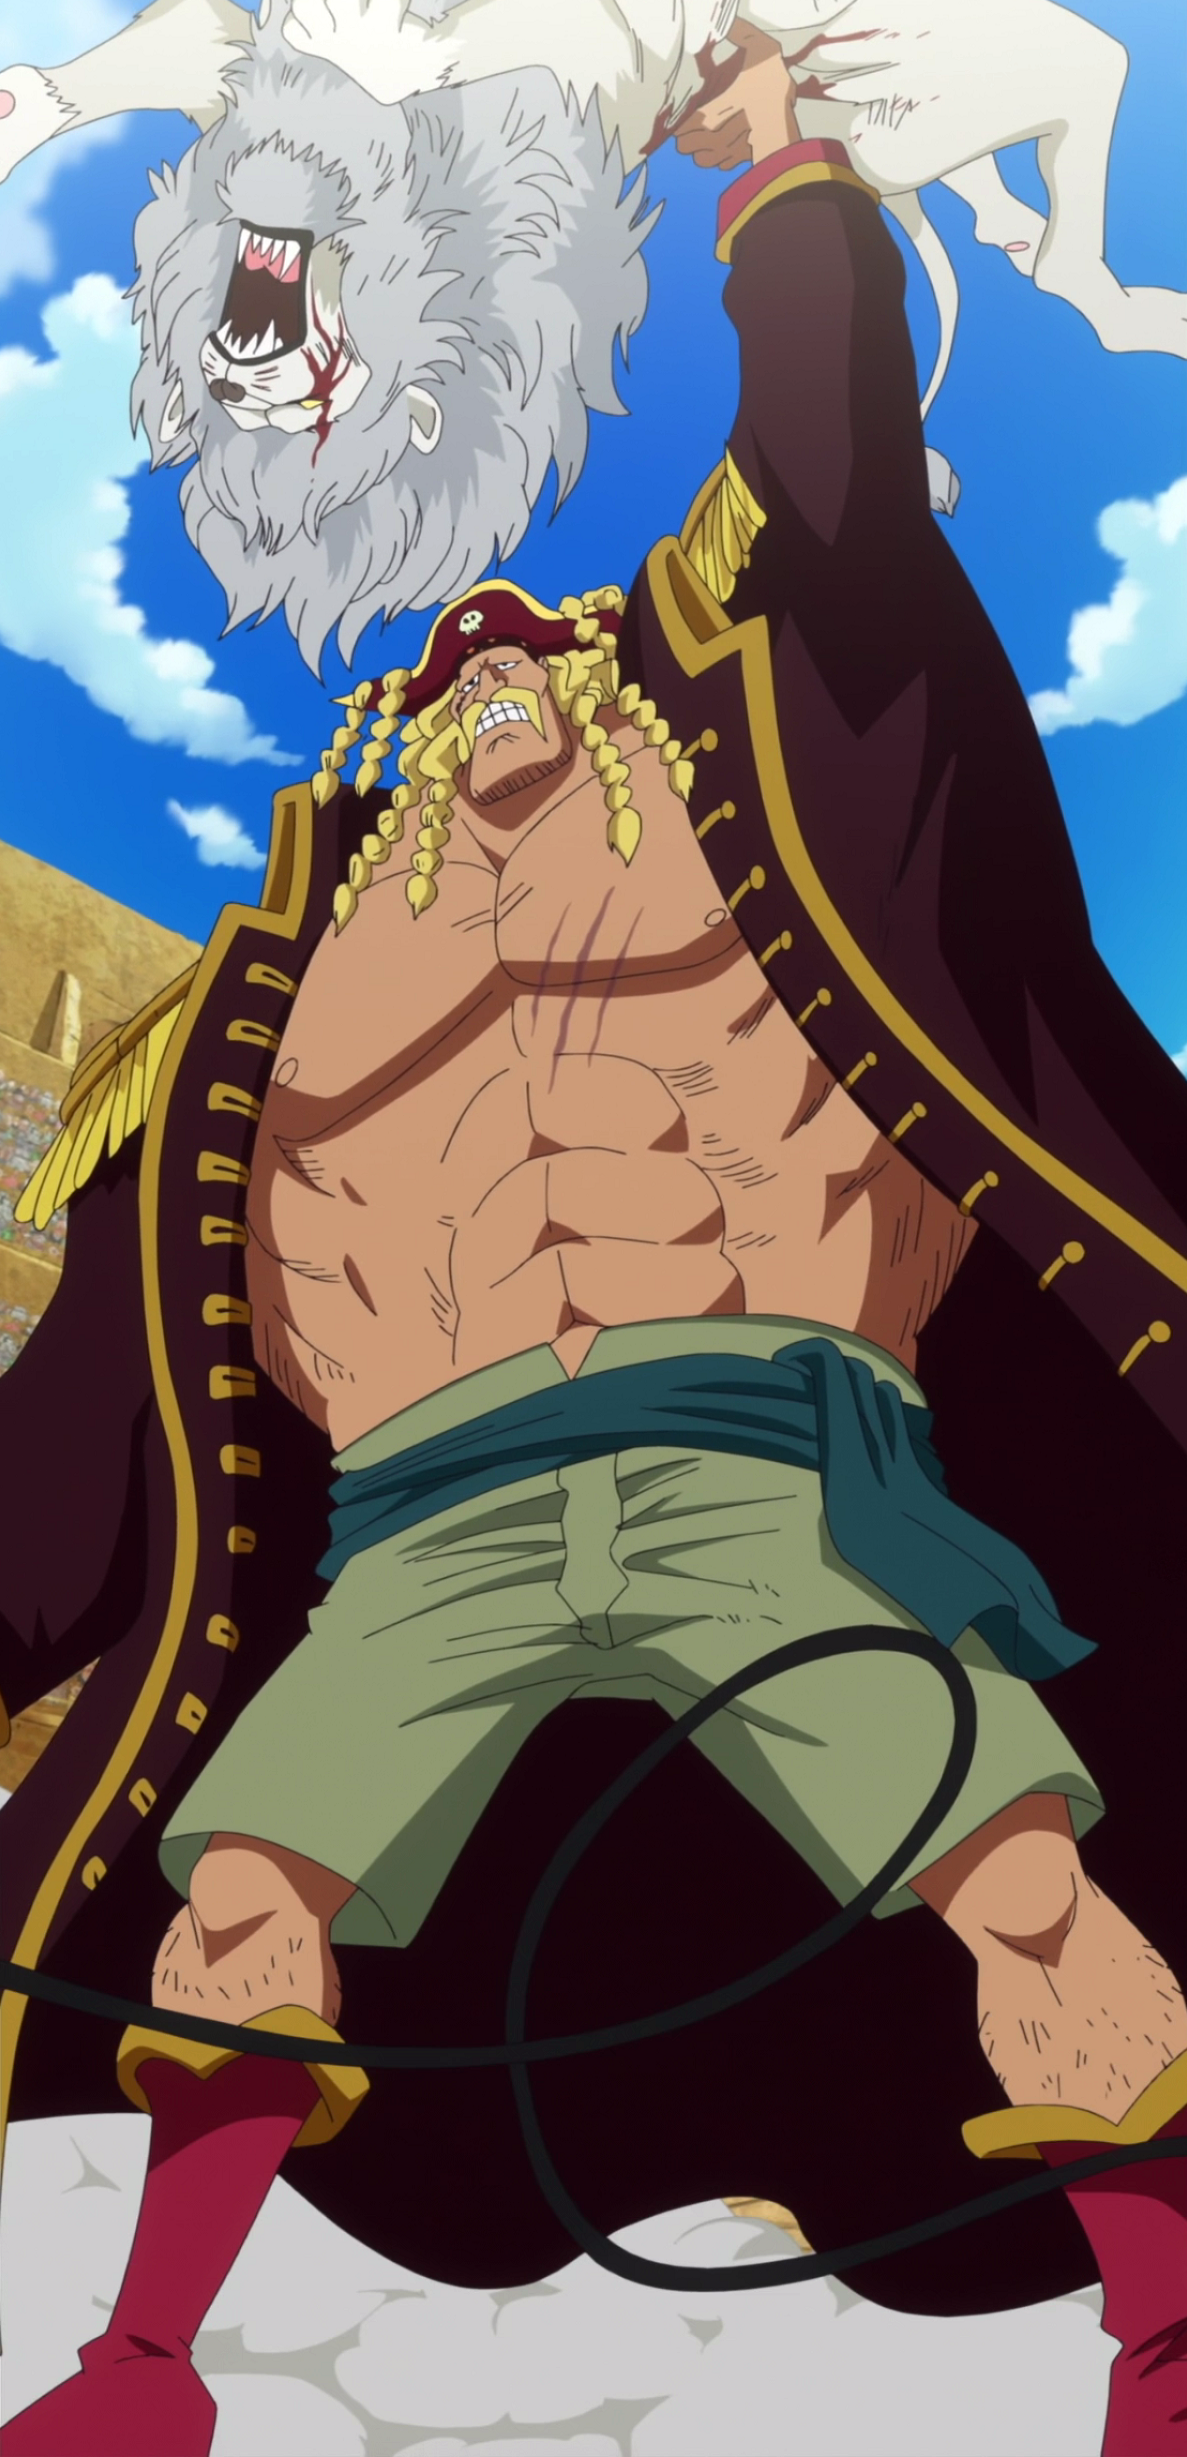 Admiral, One Piece Wiki